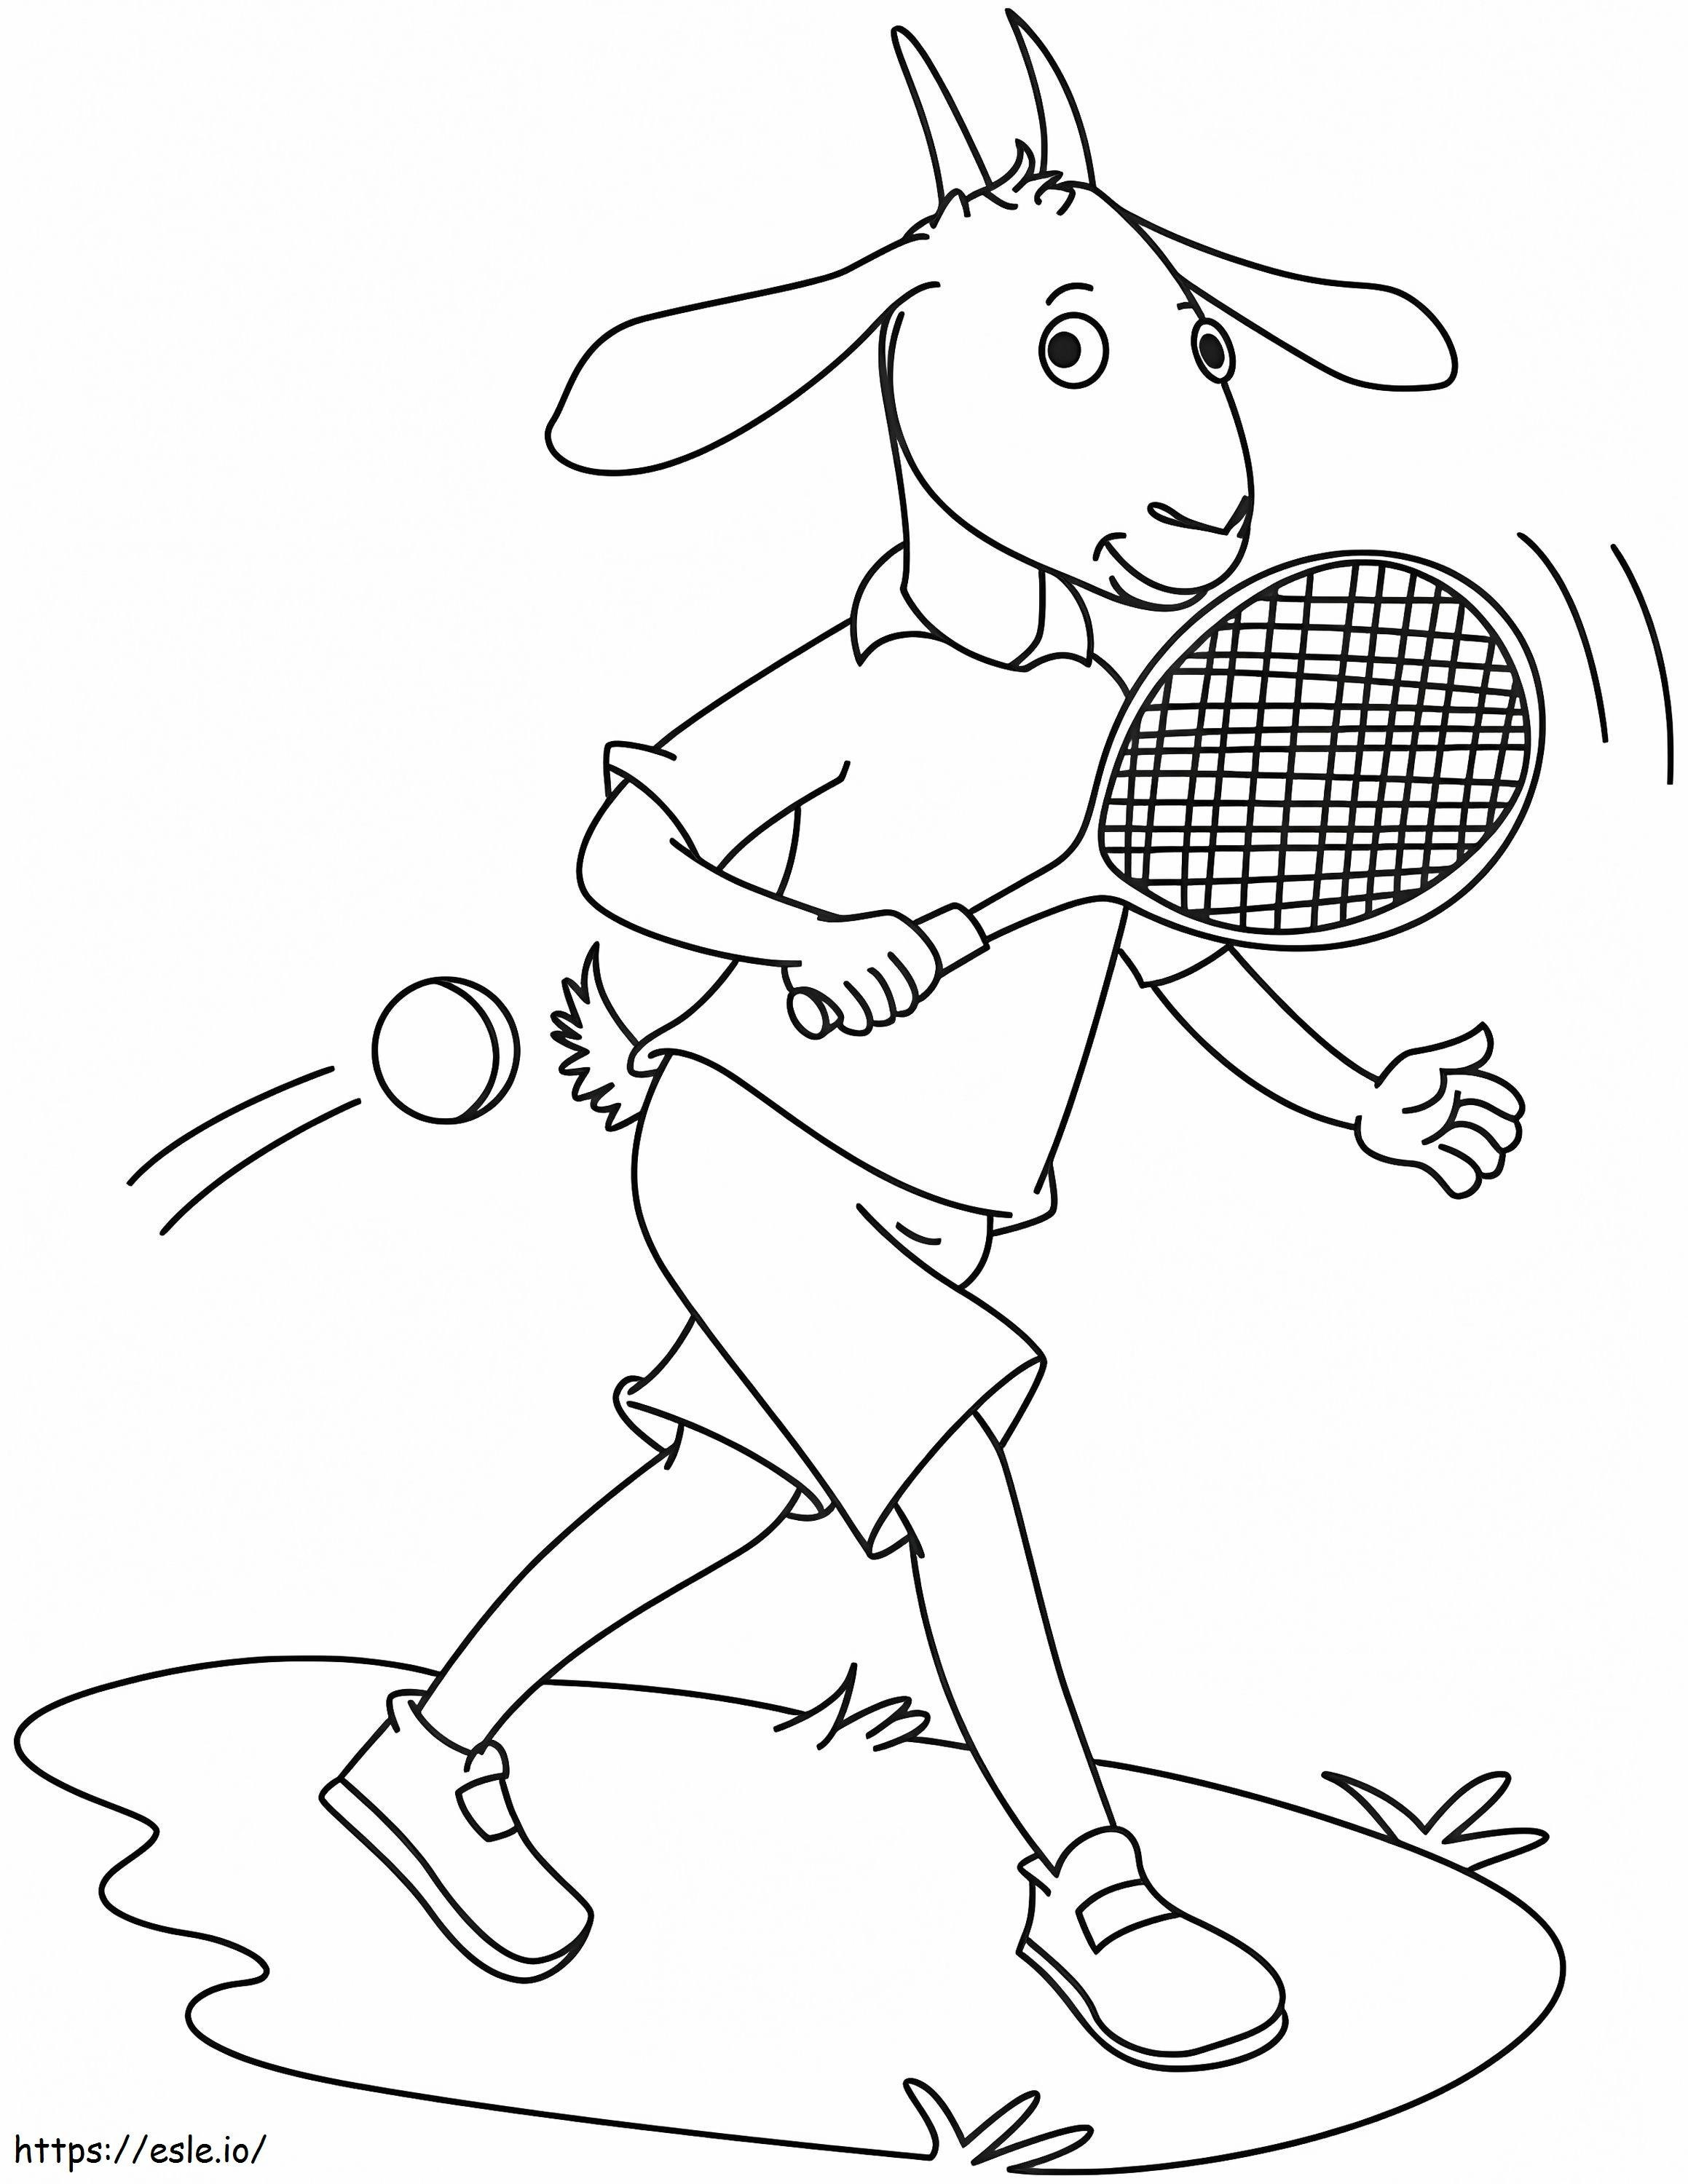 1542094131 Capra che gioca a tennis da colorare